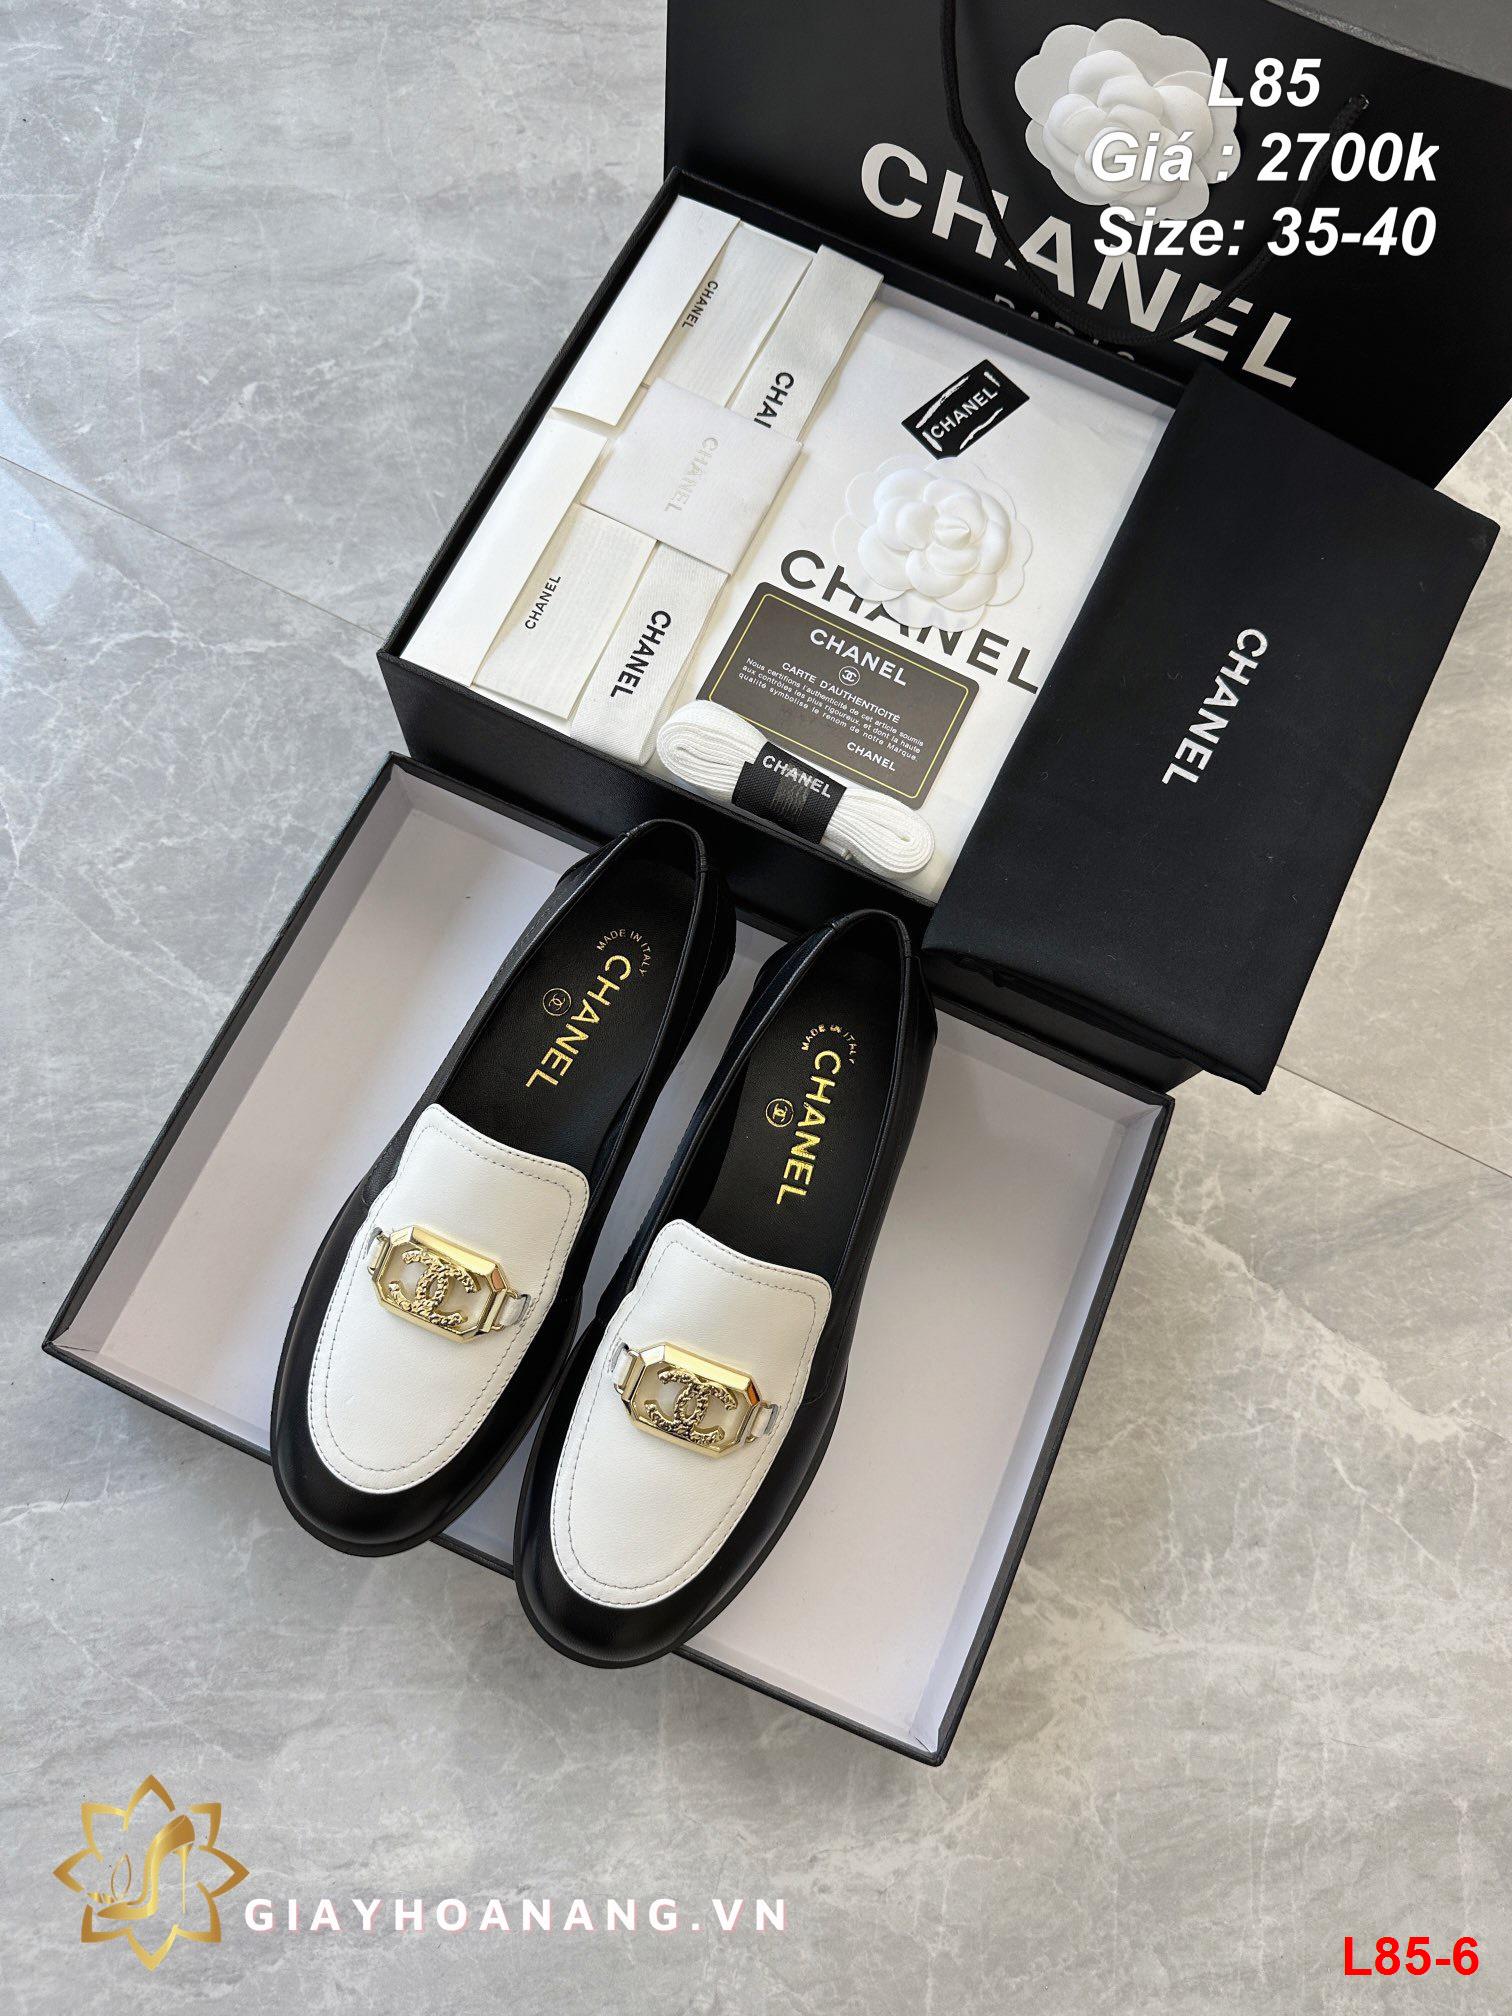 L85-6 Chanel giày lười siêu cấp